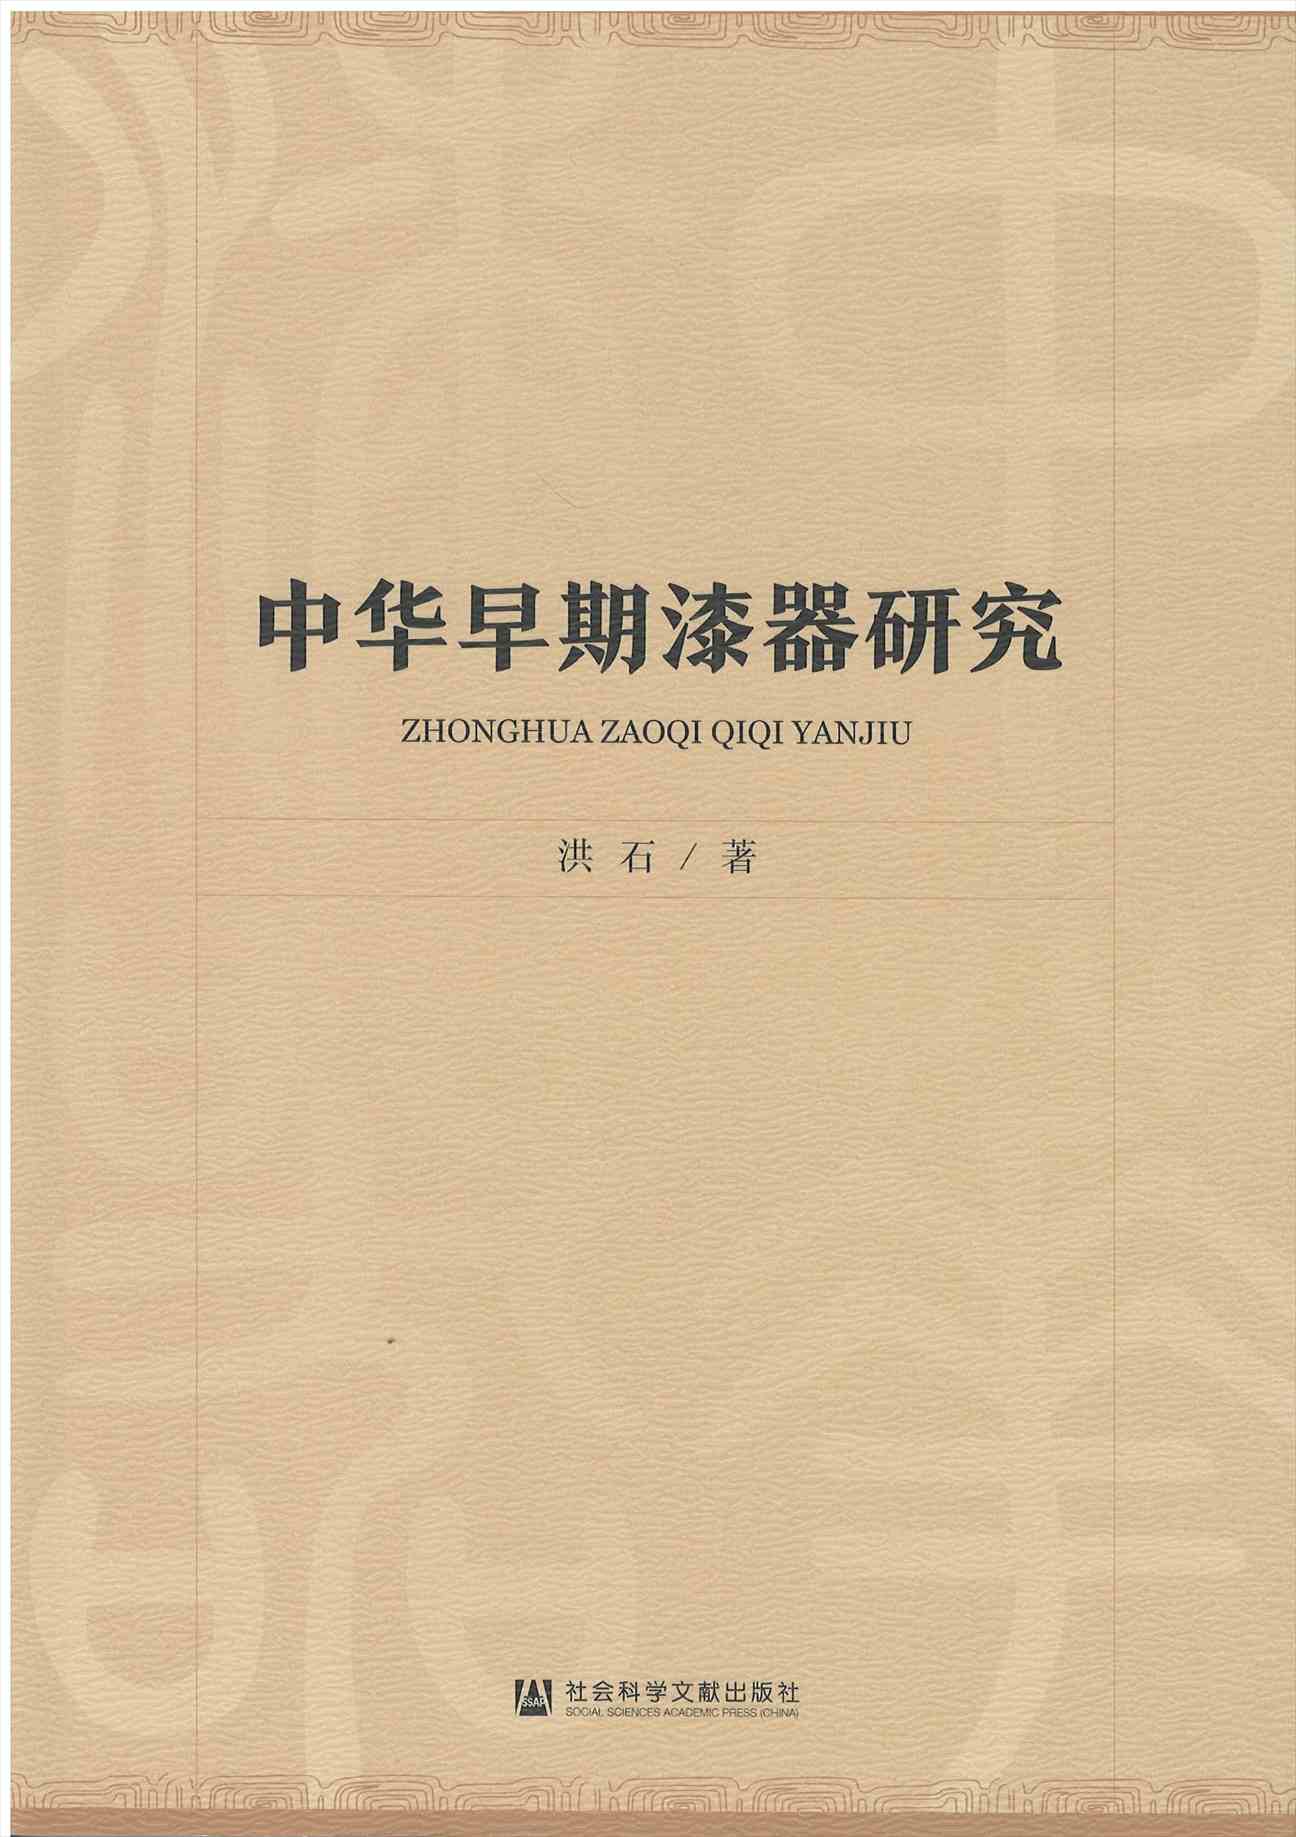 株式会社エース/ 2231-184 中華早期漆器研究*